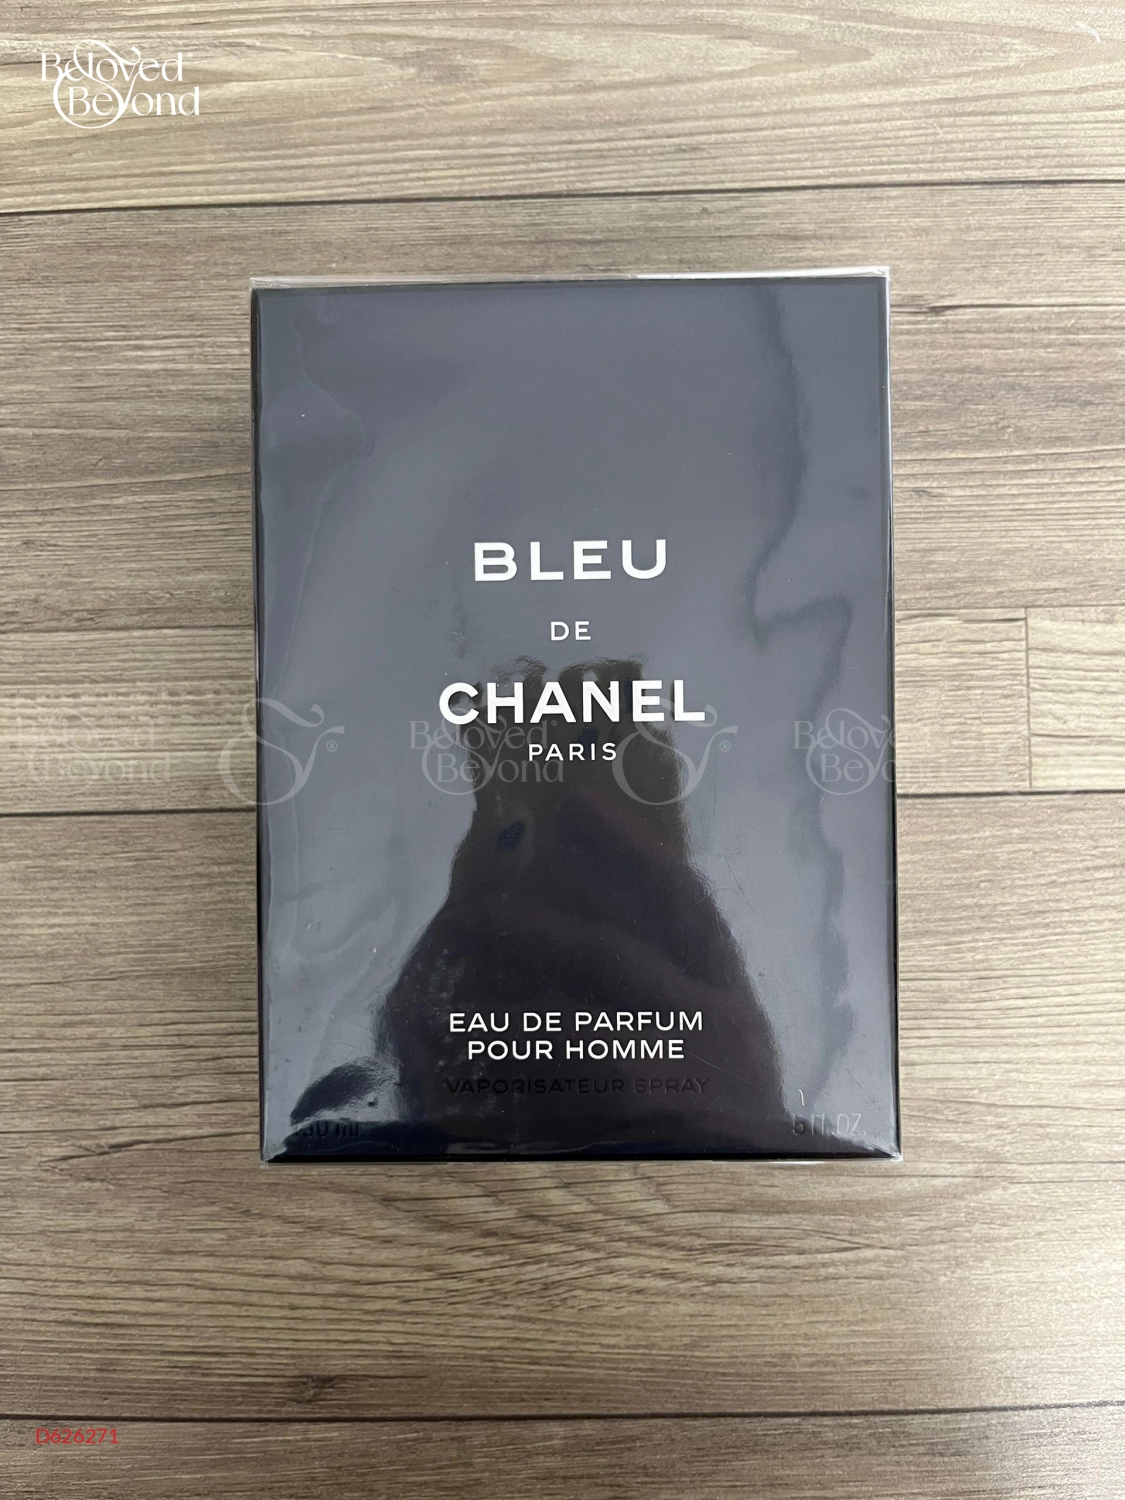 Nước Hoa Bleu De Chanel Edp, D626271, Spring Perfume For Men, Dejavu Perfume,  Tp Hồ Chí Minh, Việt Nam, Beloved  Beyond (BB)